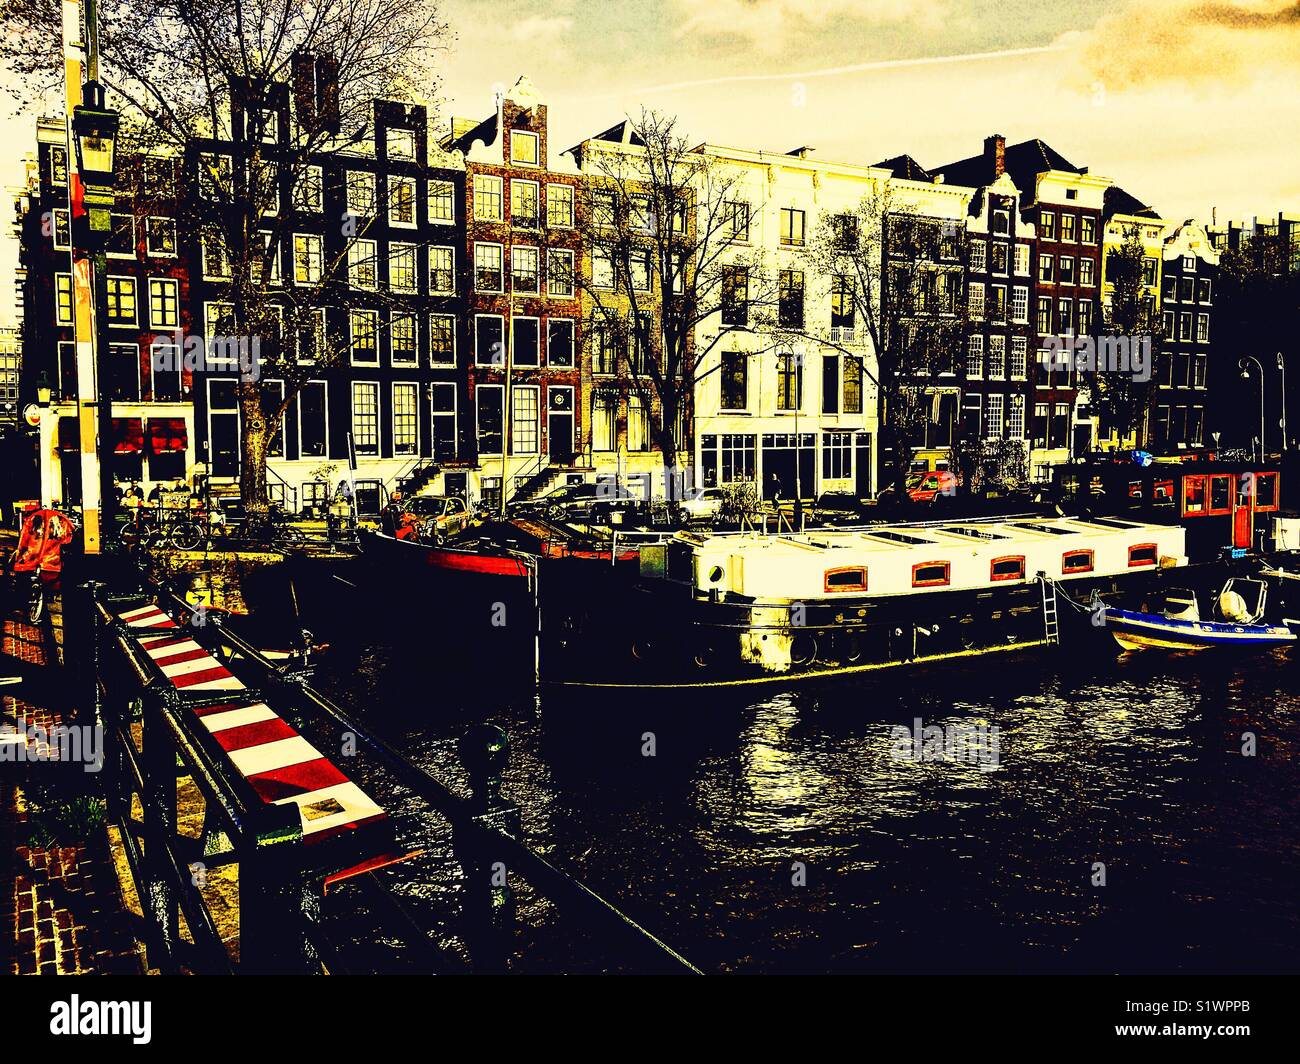 Traditionelle Häuser mit Hausbooten auf dem Fluss Amstel ab Magere Brug, das Dünne Brücke, Amsterdam, Niederlande gesehen Stockfoto